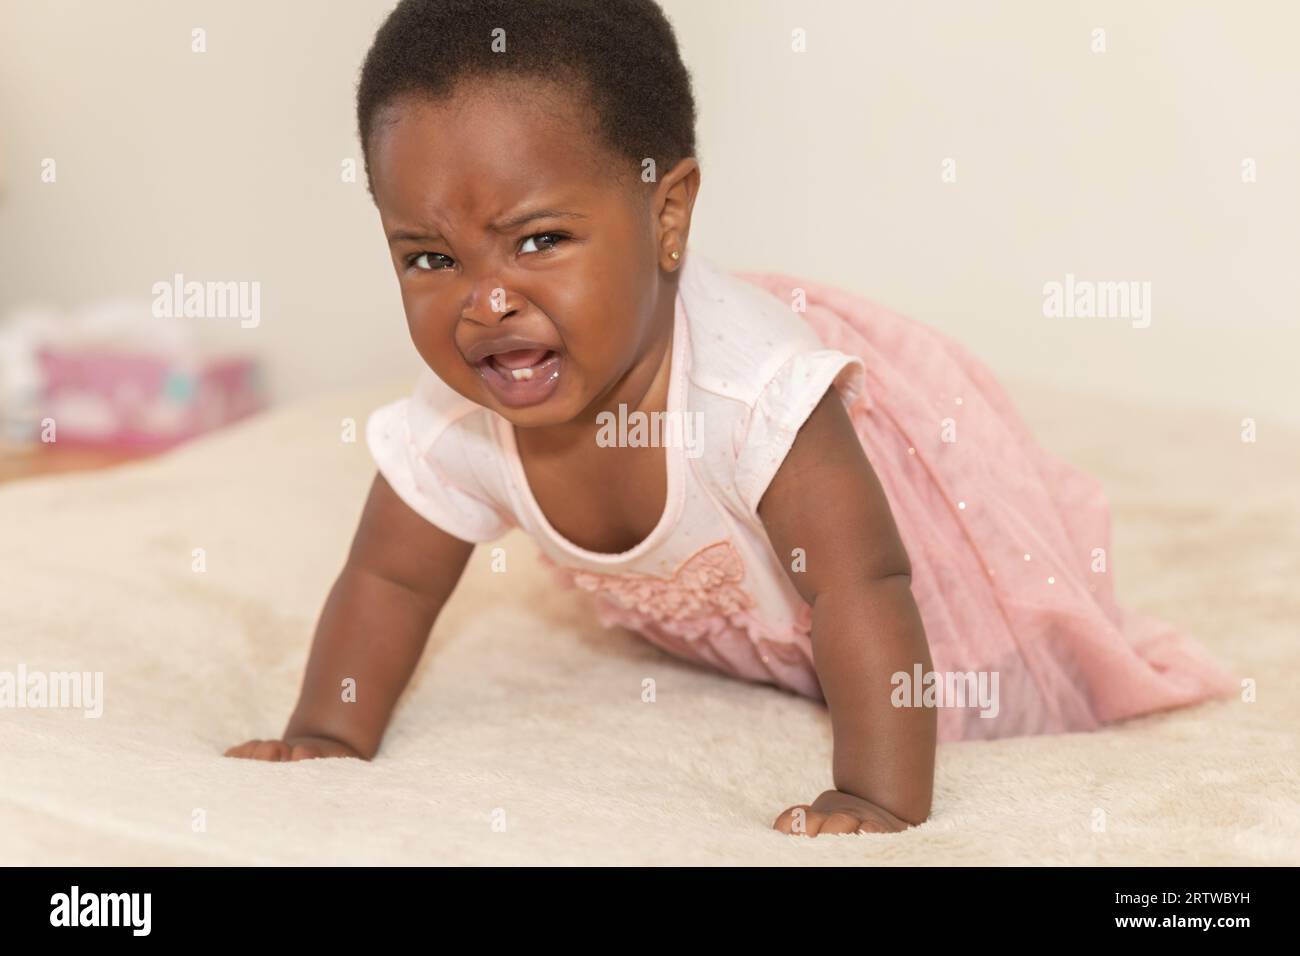 Portrait d'une petite fille noire pleurant habillée dans une robe rose rampant sur un lit Banque D'Images